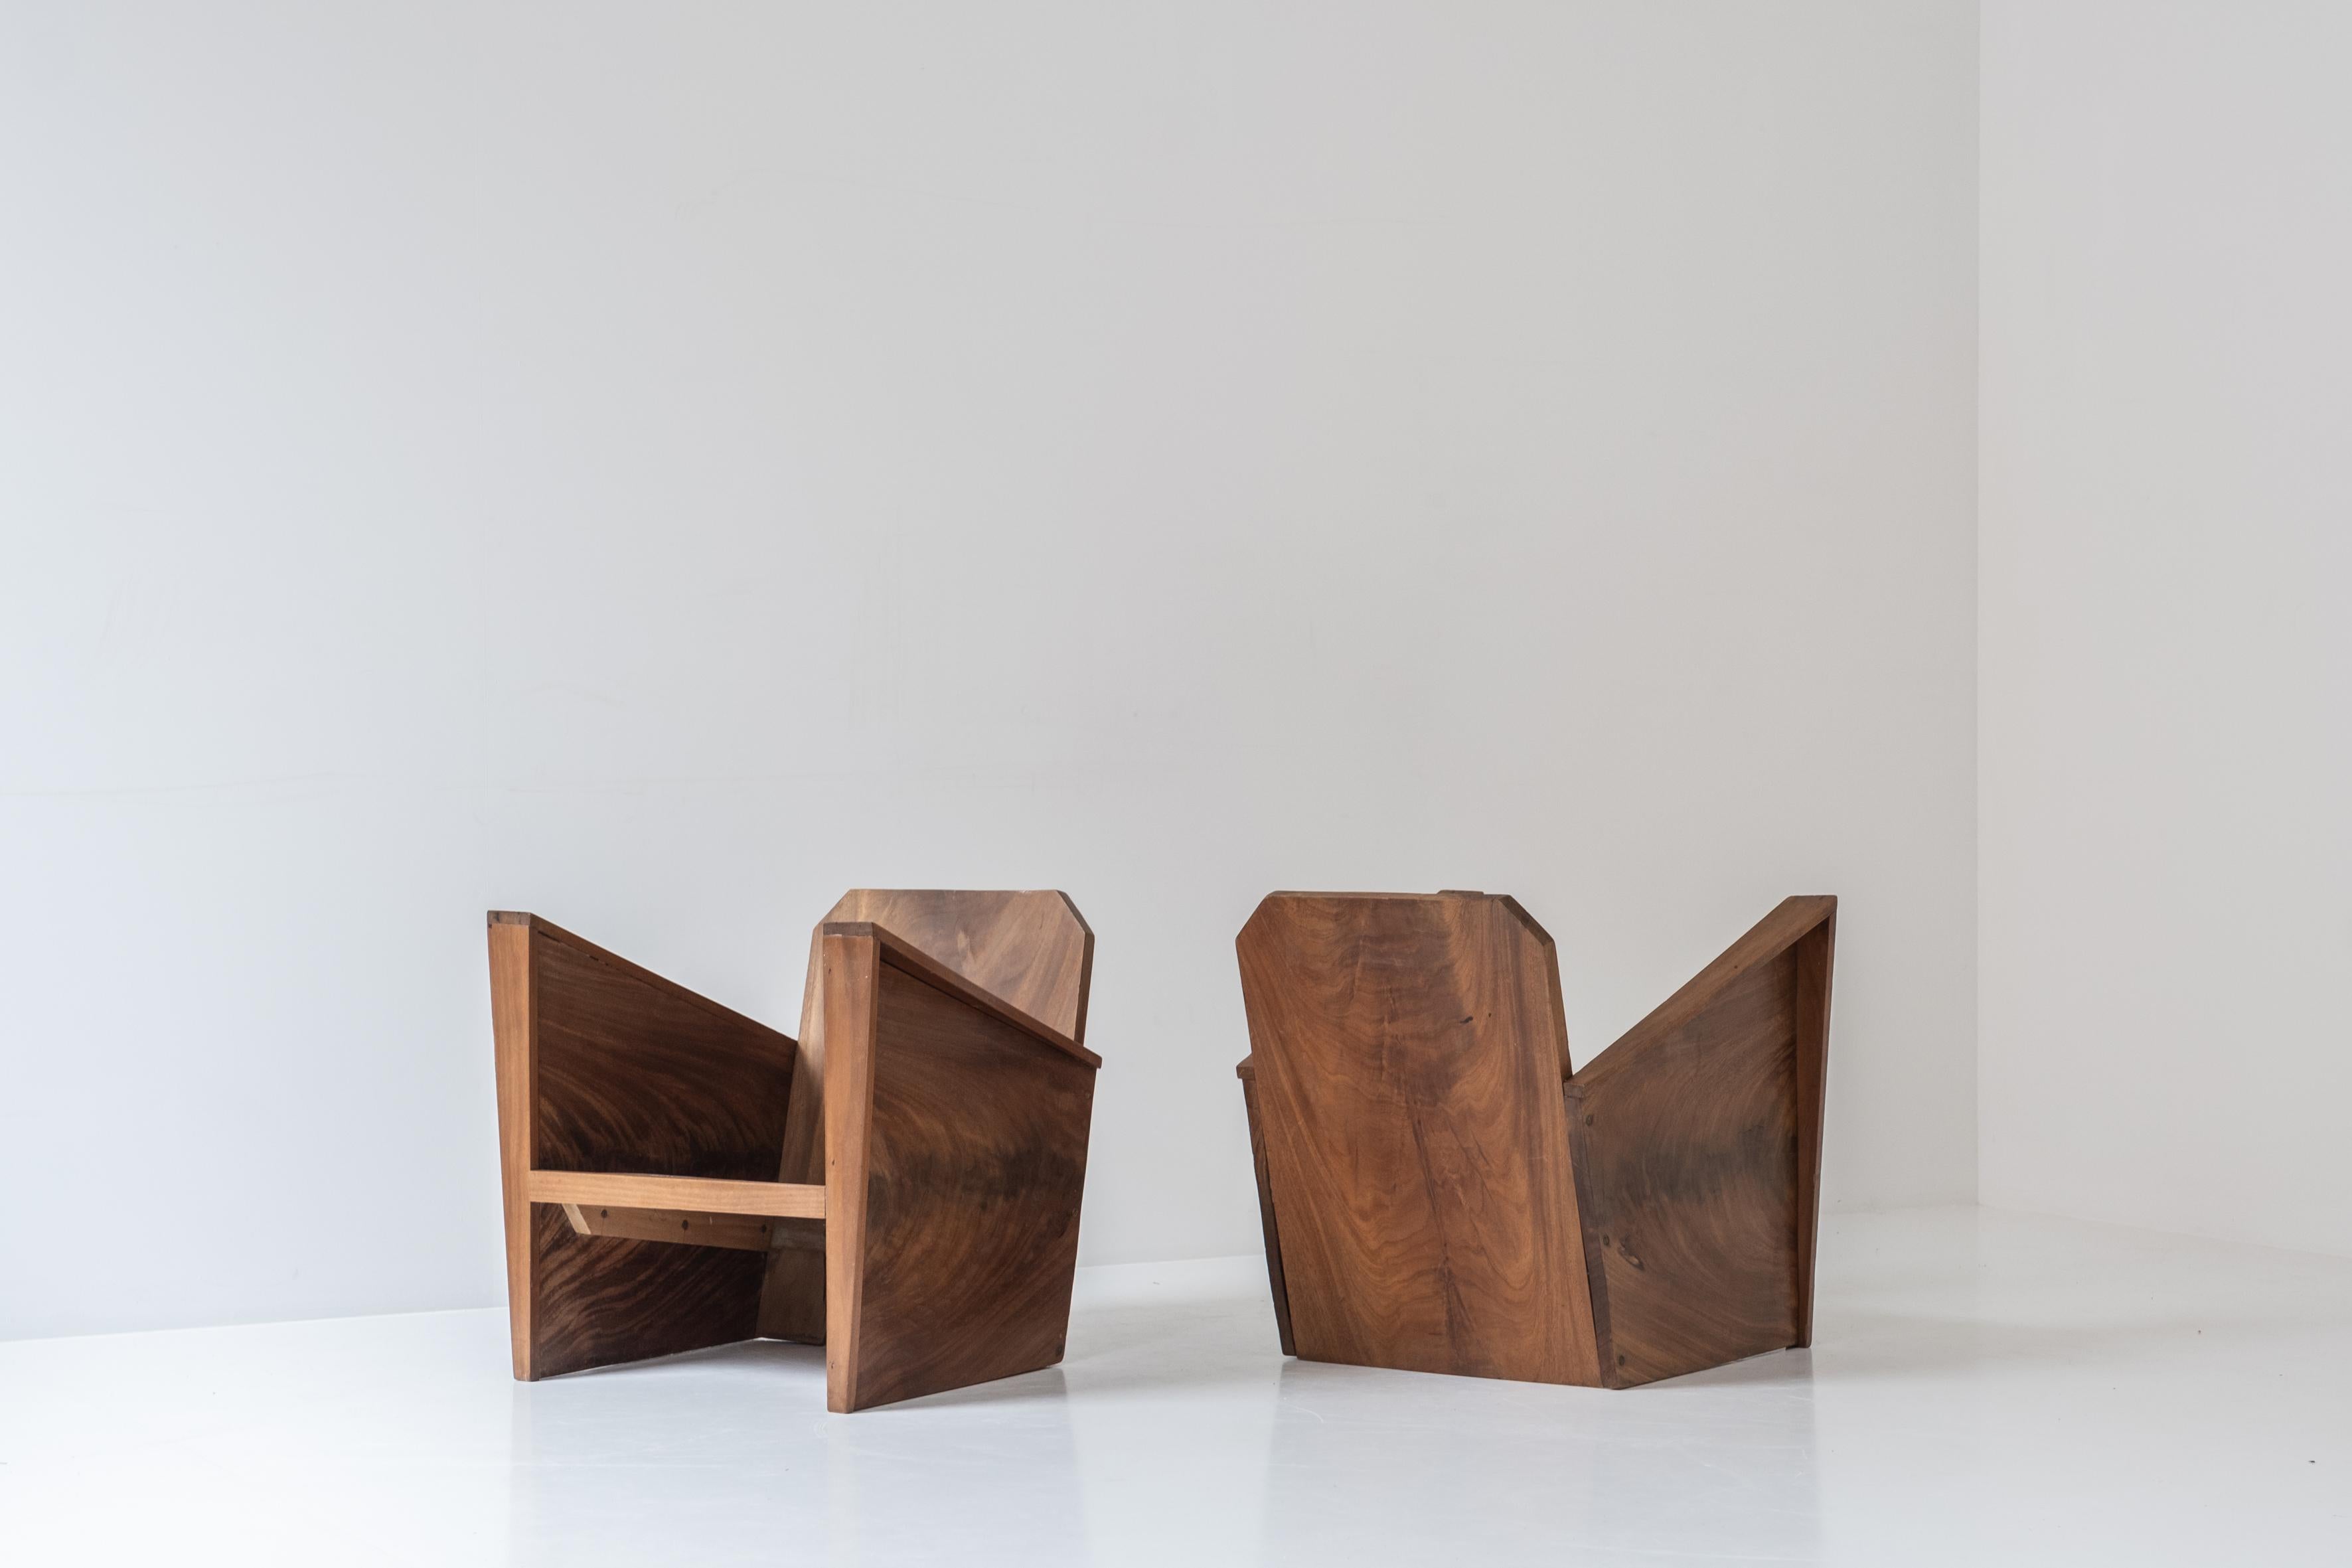 The Lovely pair Art Deco easy chairs from France, dated from the 1950s. Cet ensemble est fabriqué en acajou et présente un beau grain qui donne à ces fauteuils beaucoup de caractère. Le designer (pour l'instant) n'est pas connu, mais il s'agit sans